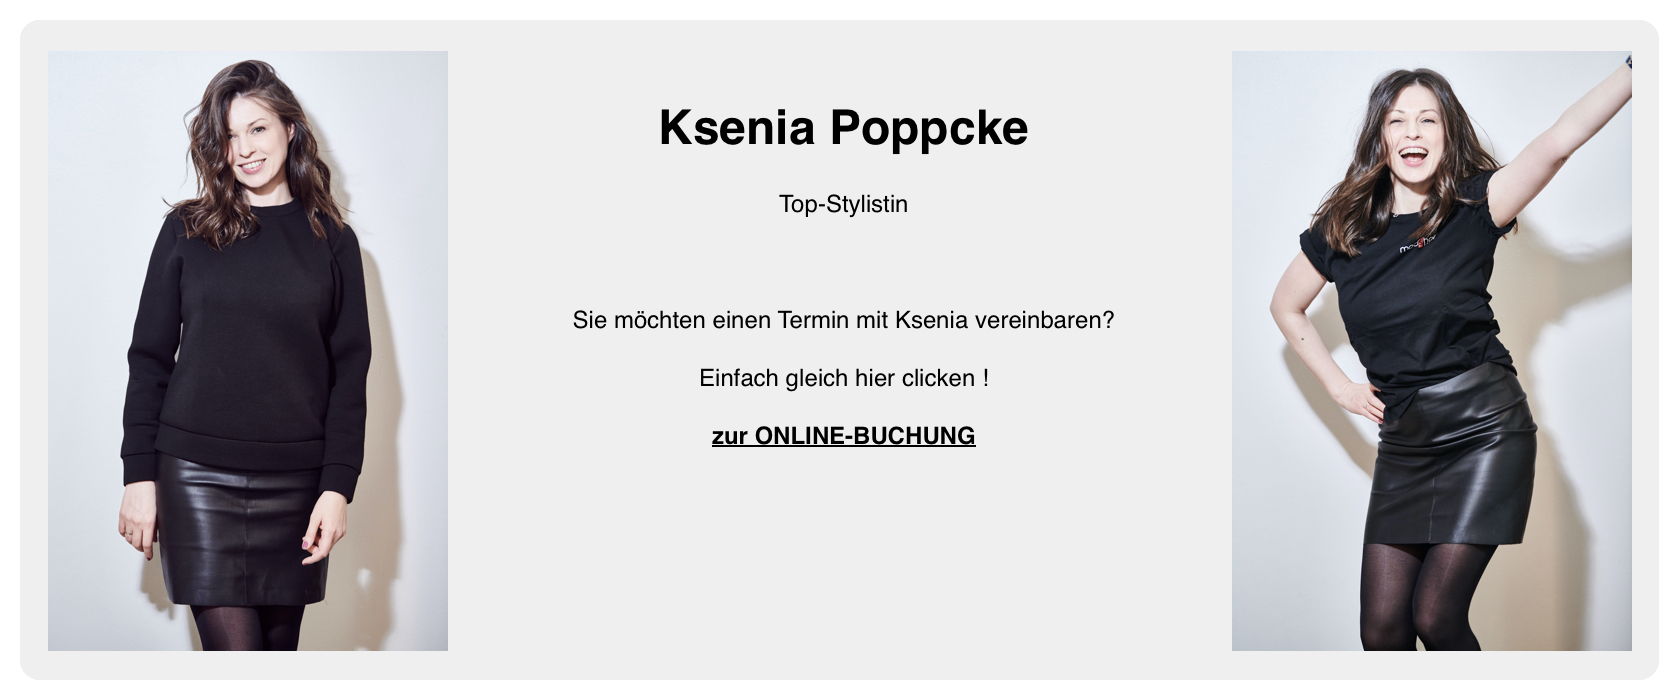 Ksenia Poppcke